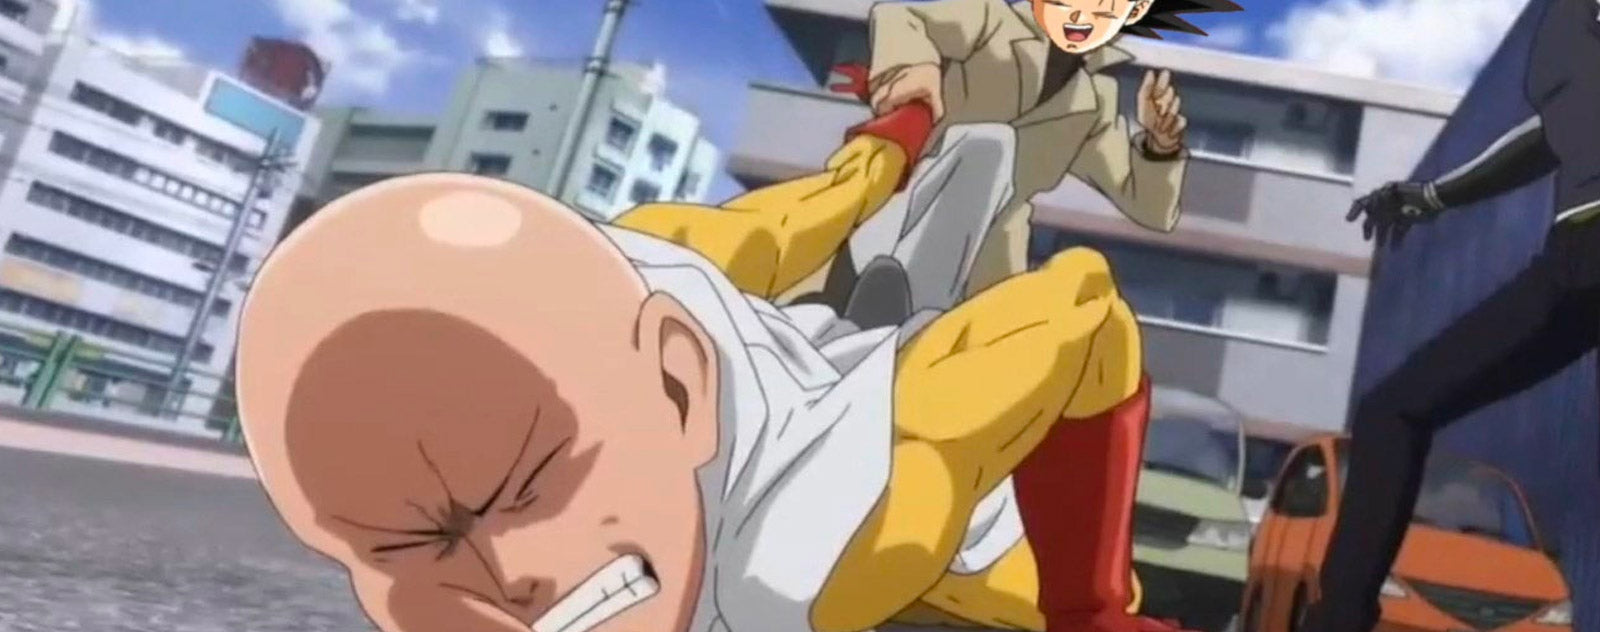 Goku más fuerte que Saitama.